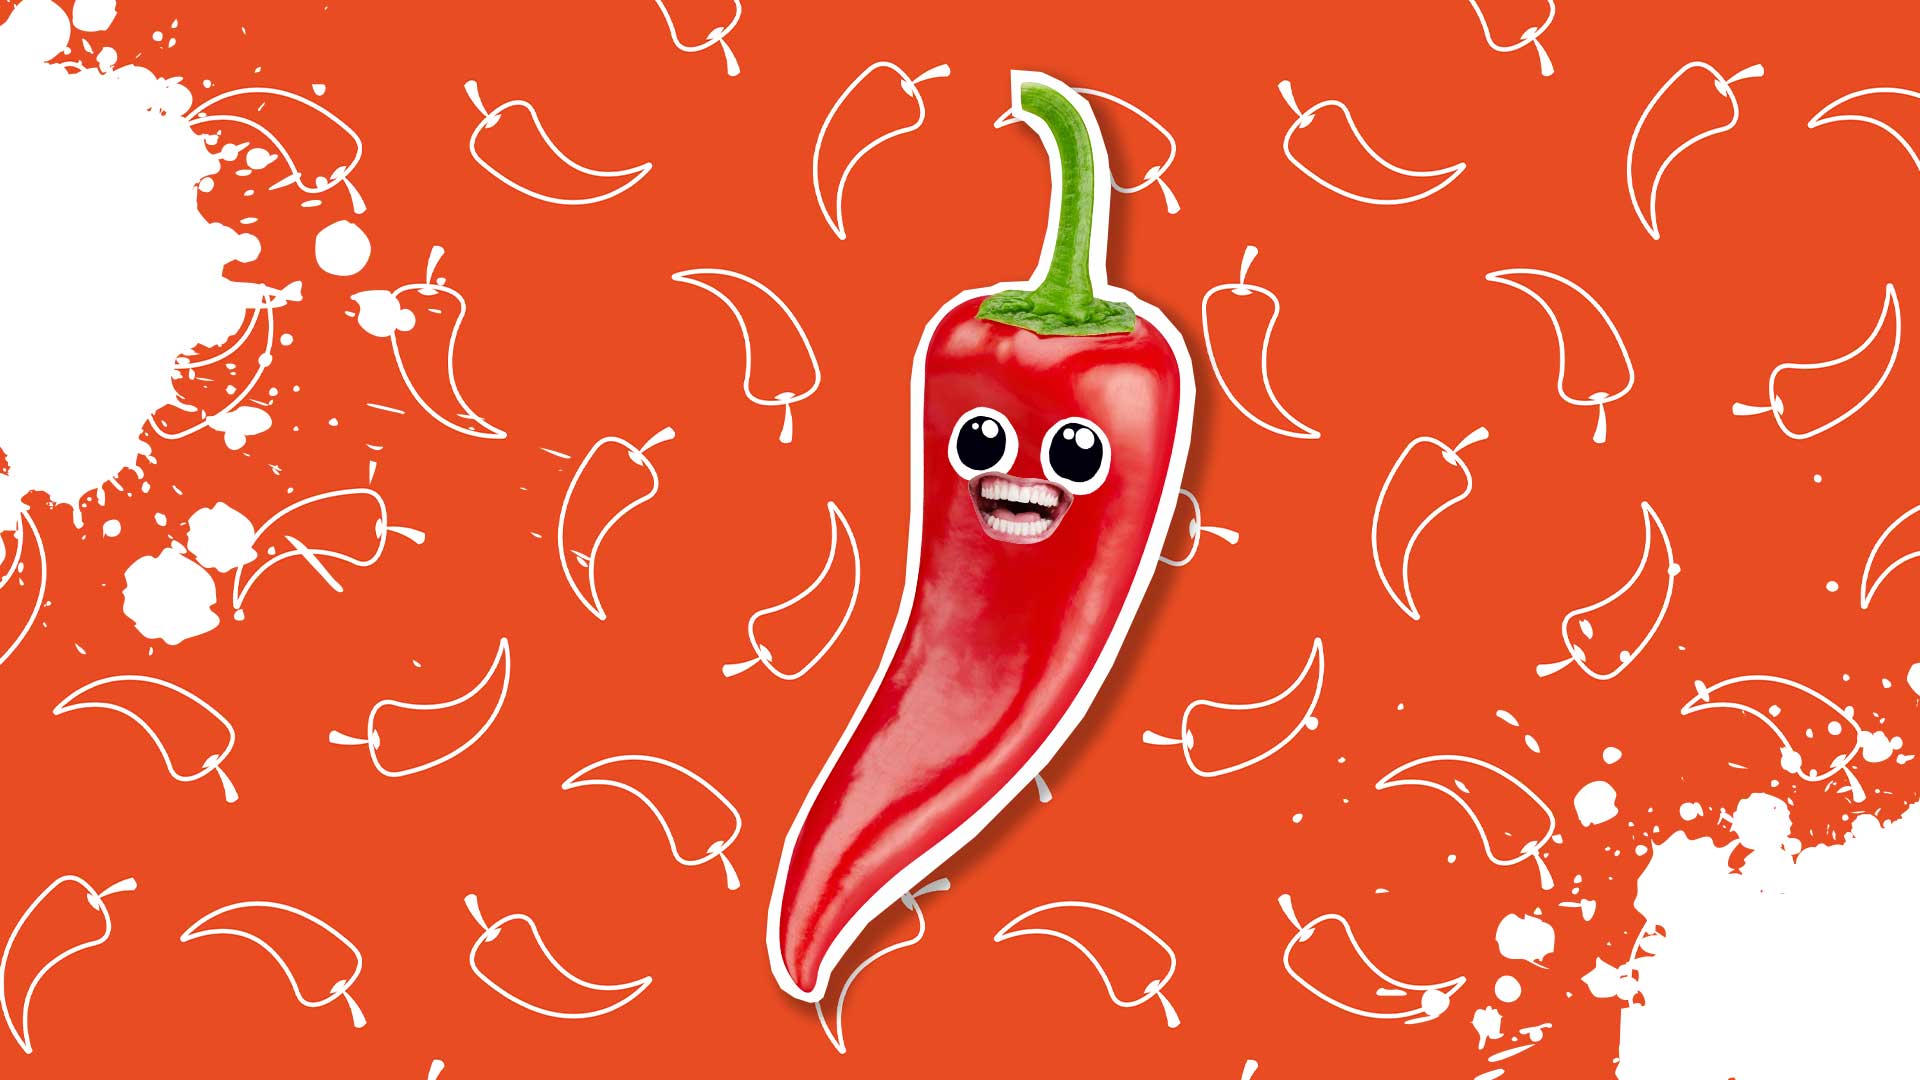 A red chilli pepper